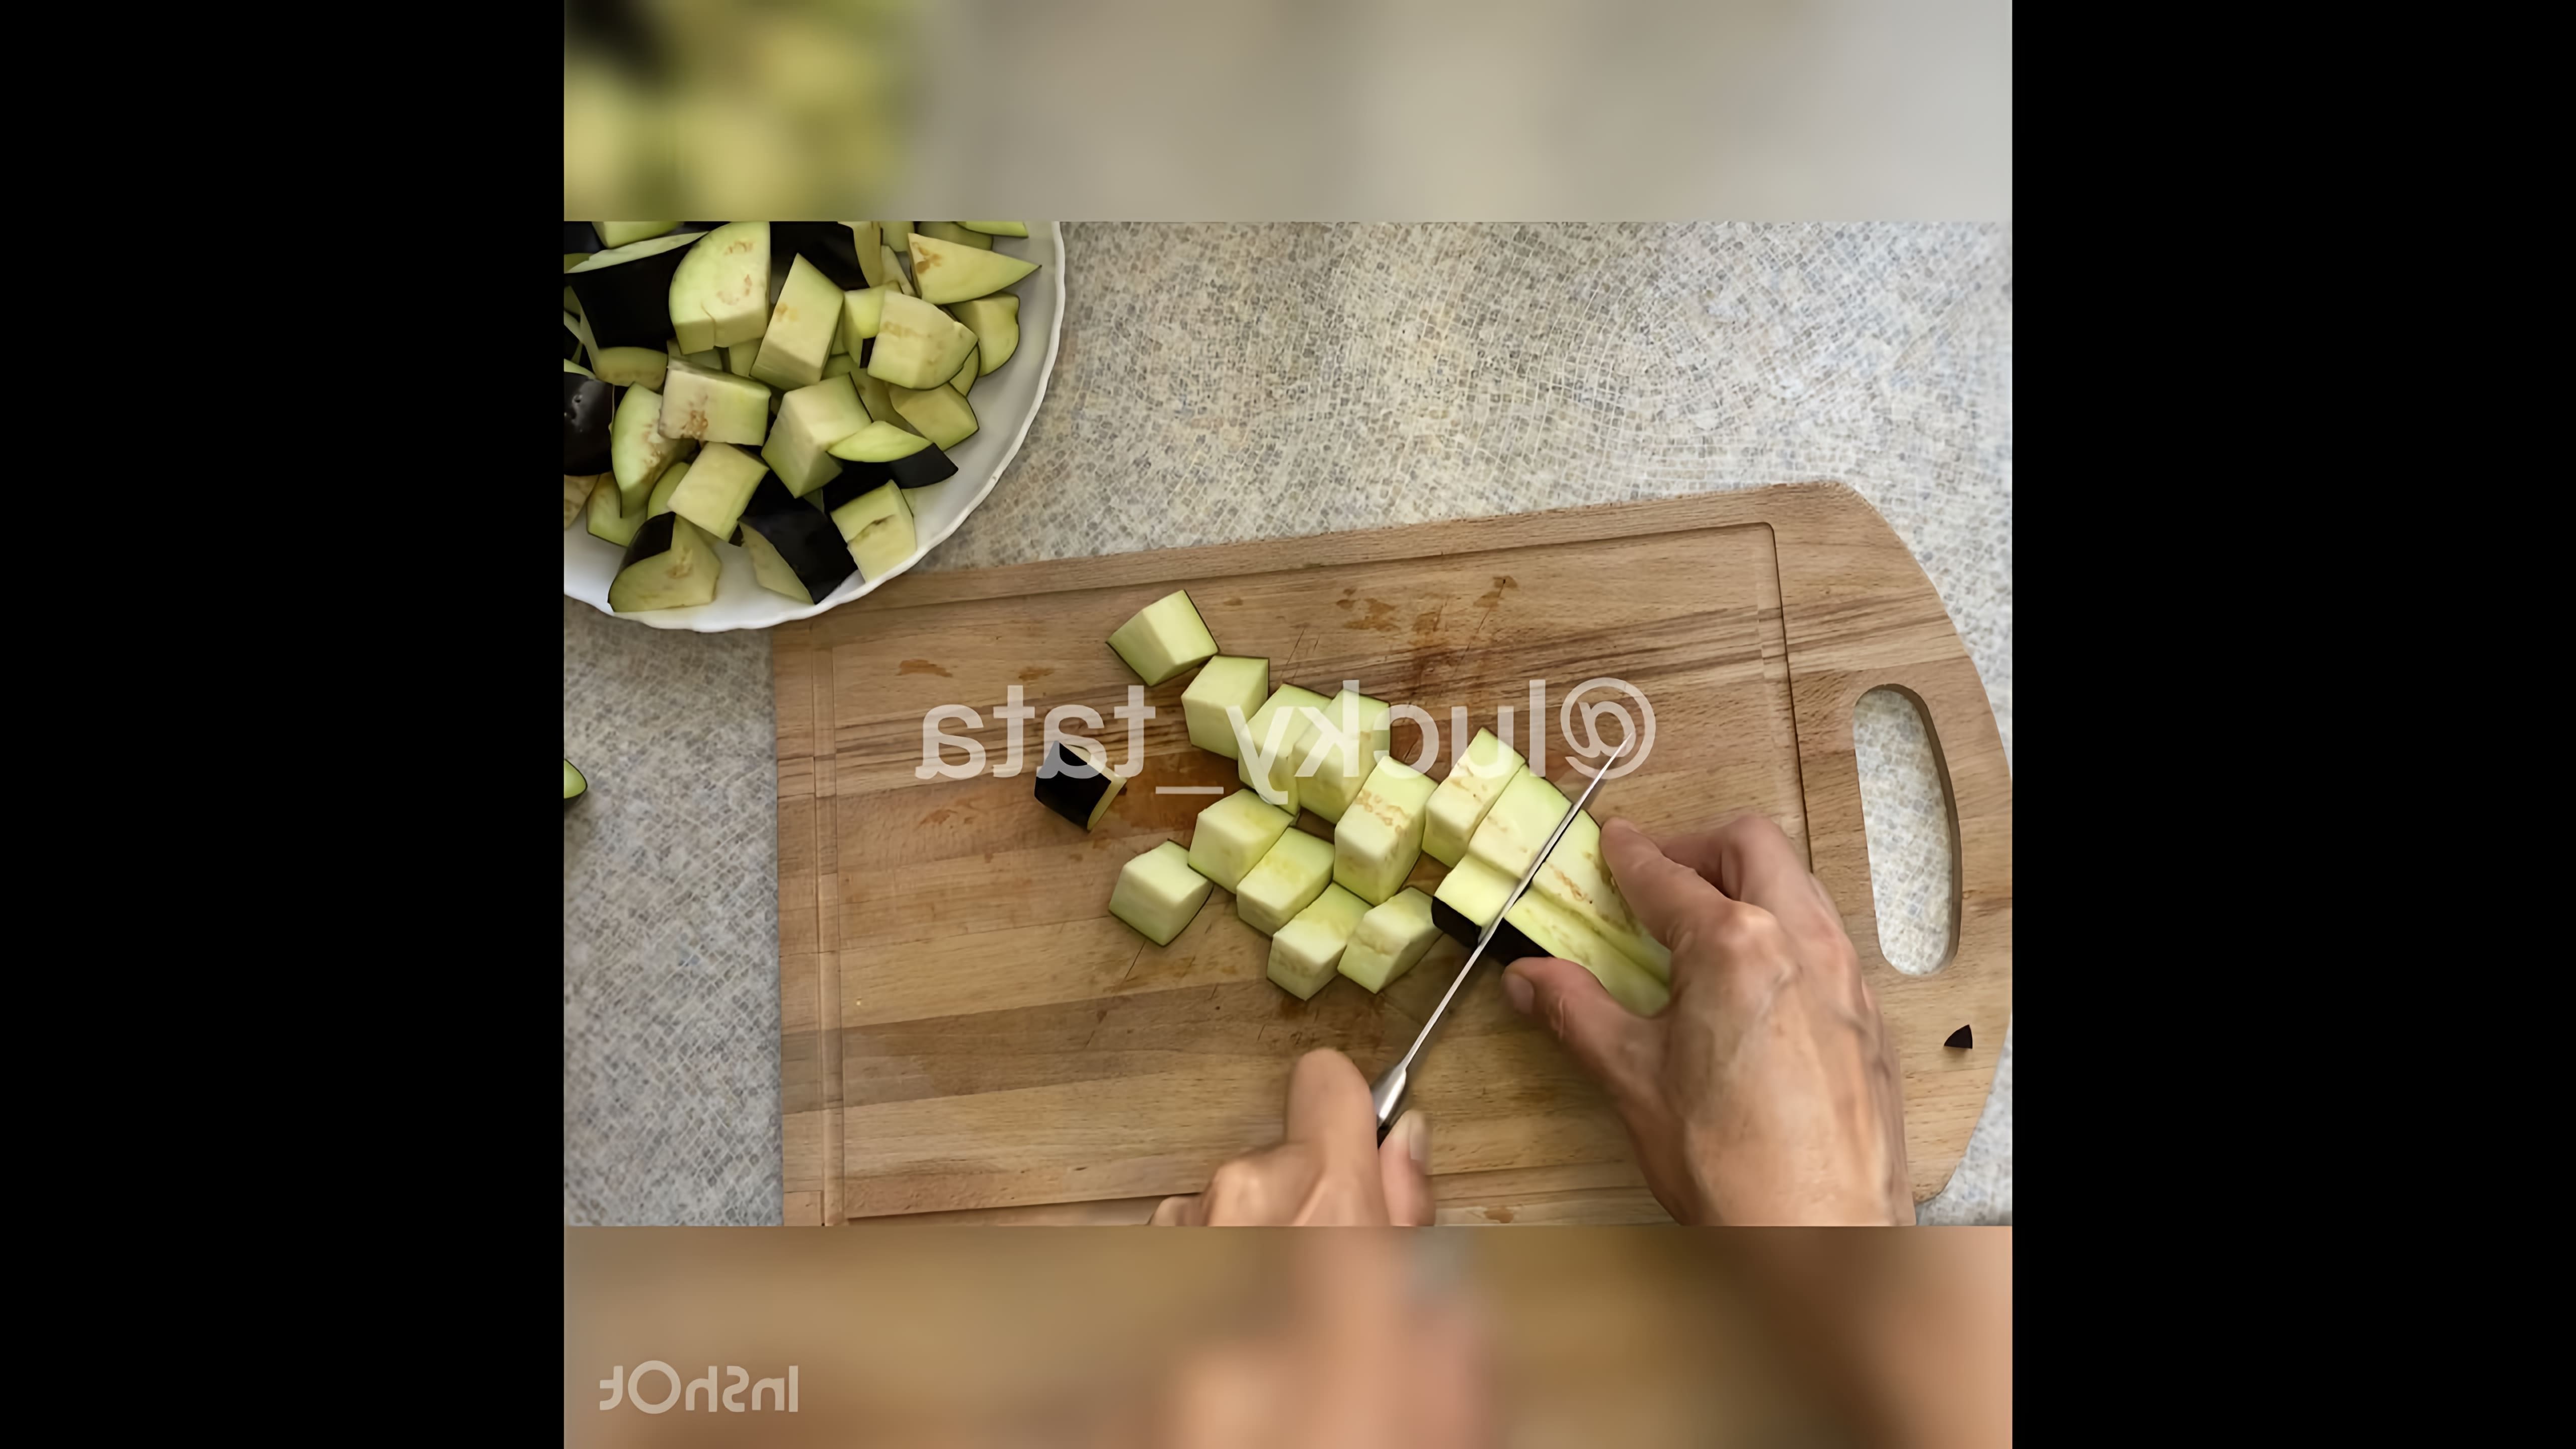 Салат "Лаззат" с хрустящими баклажанами - это вкусное и оригинальное блюдо, которое можно приготовить в домашних условиях